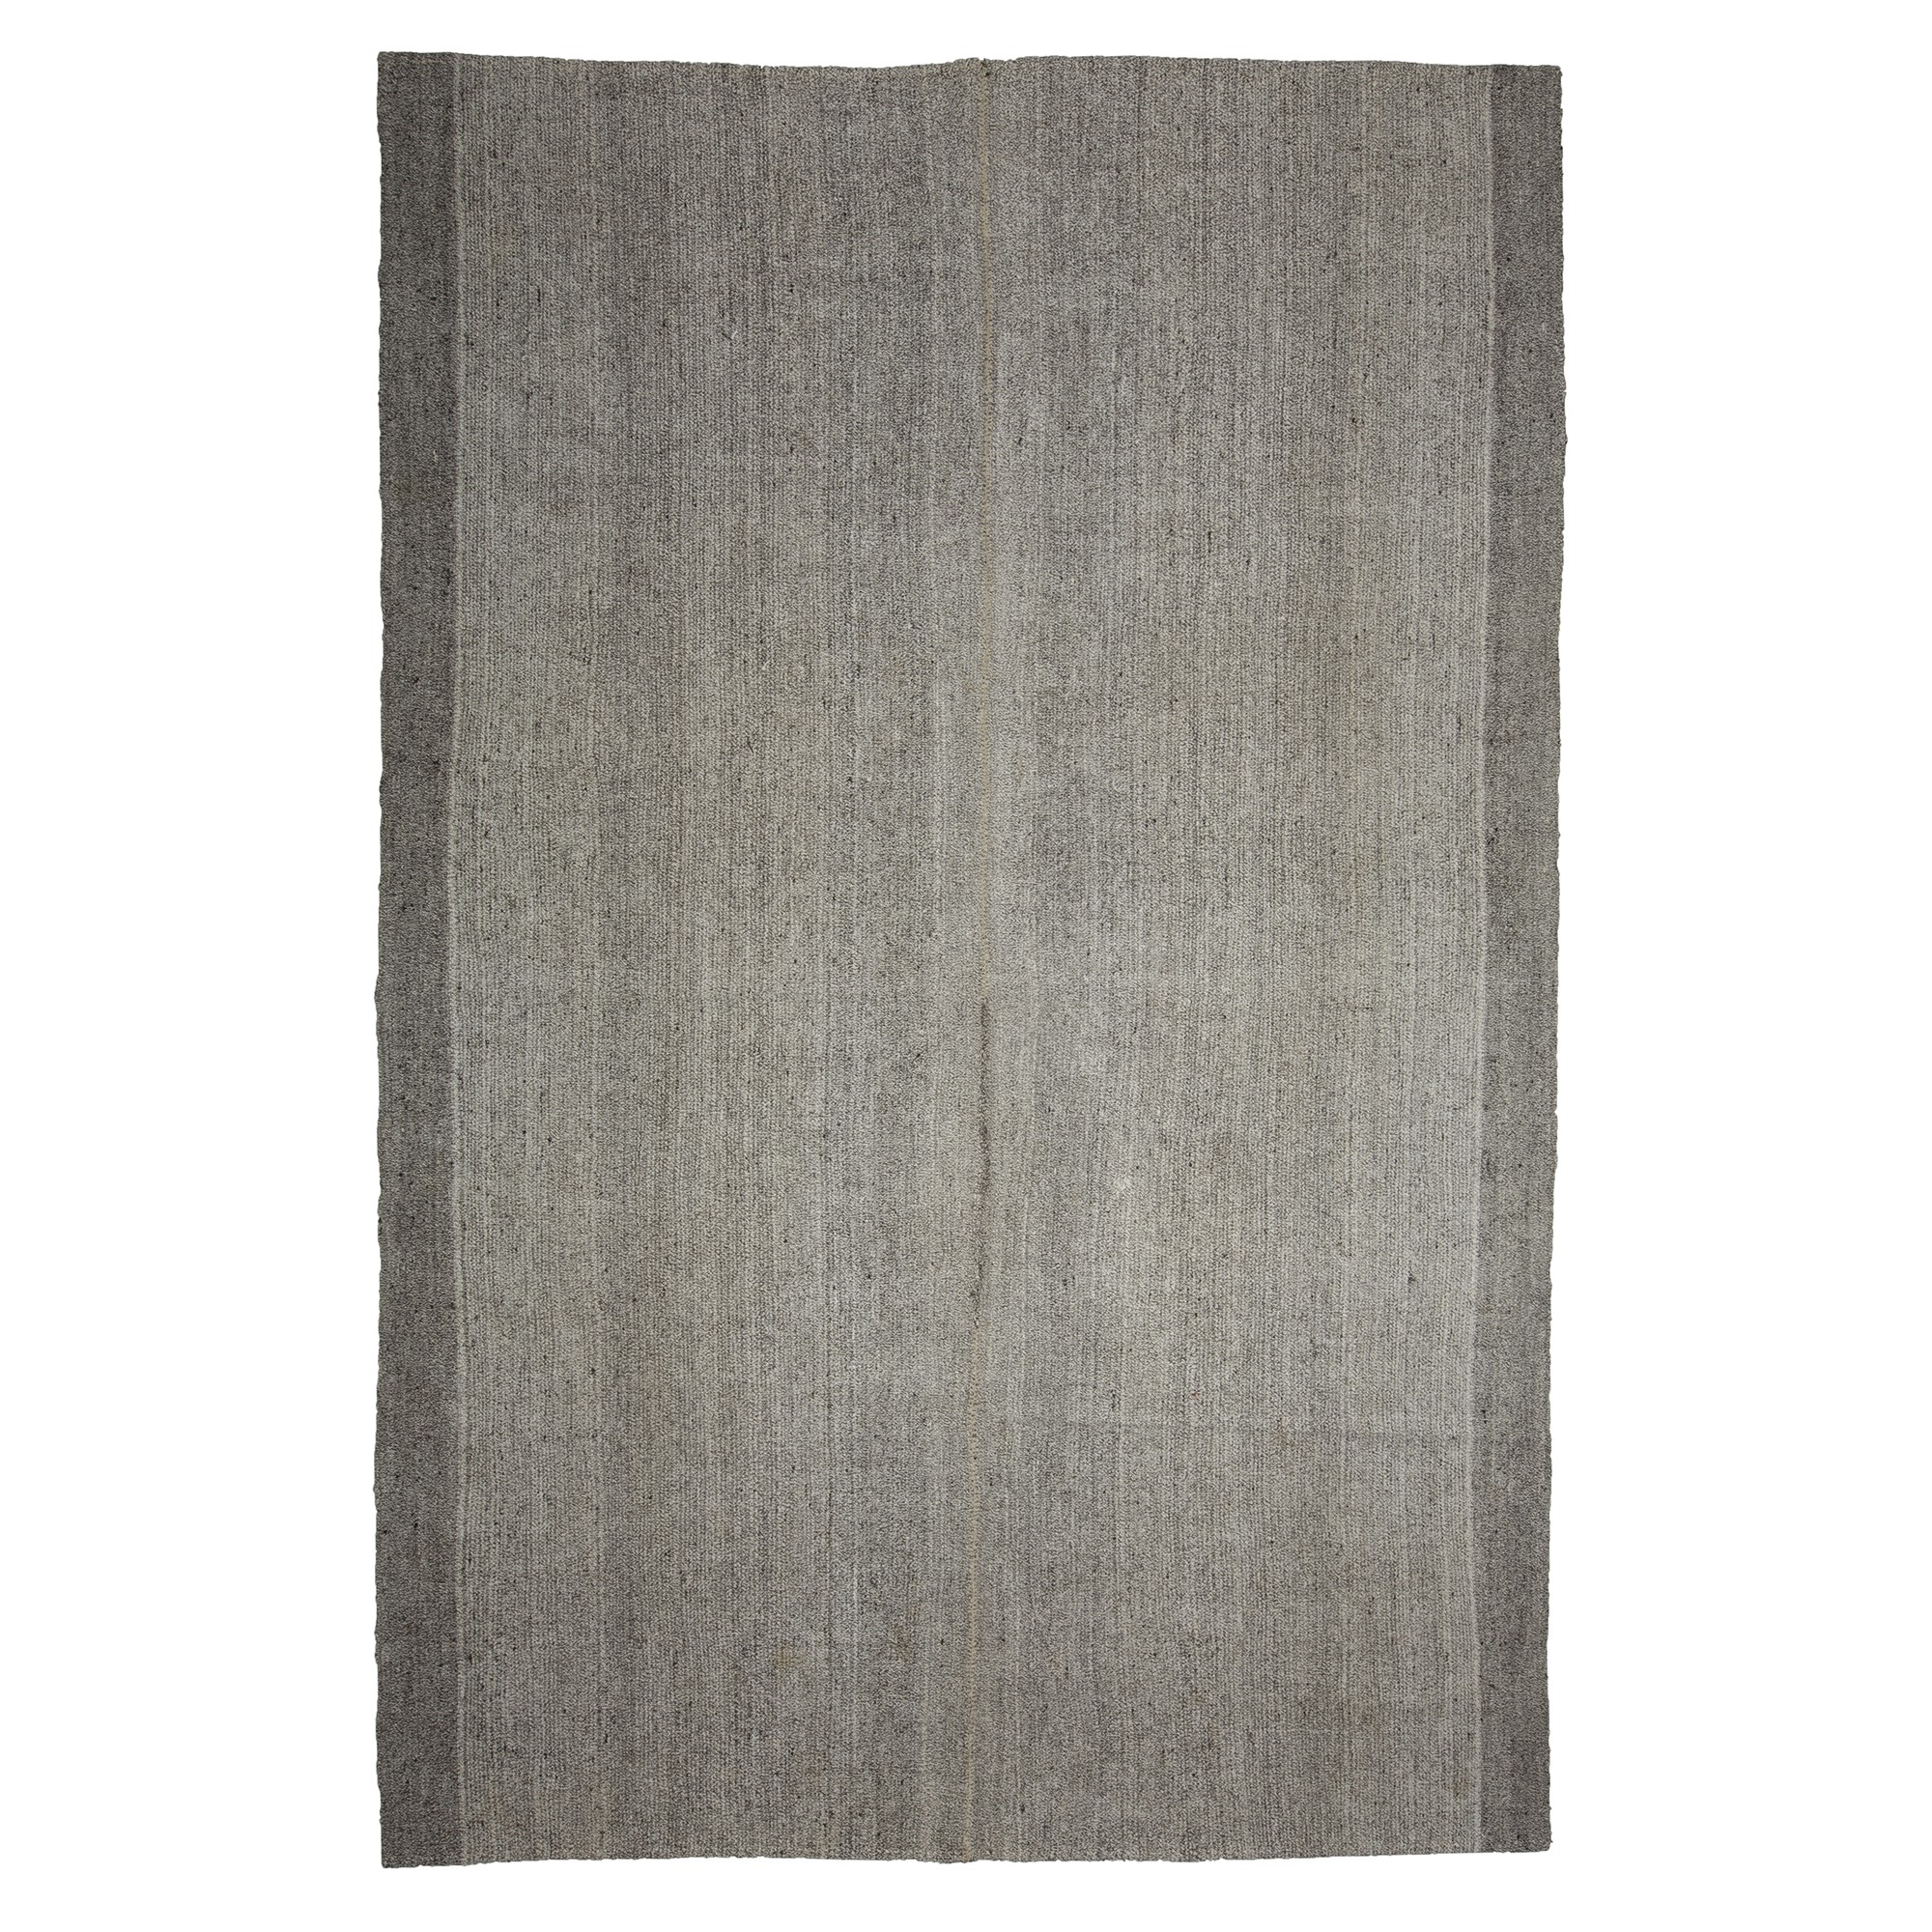 Plain Gray Turkish Flat Weave Rug 7x11 Feet 215,325 - Grey Turkish Rug 